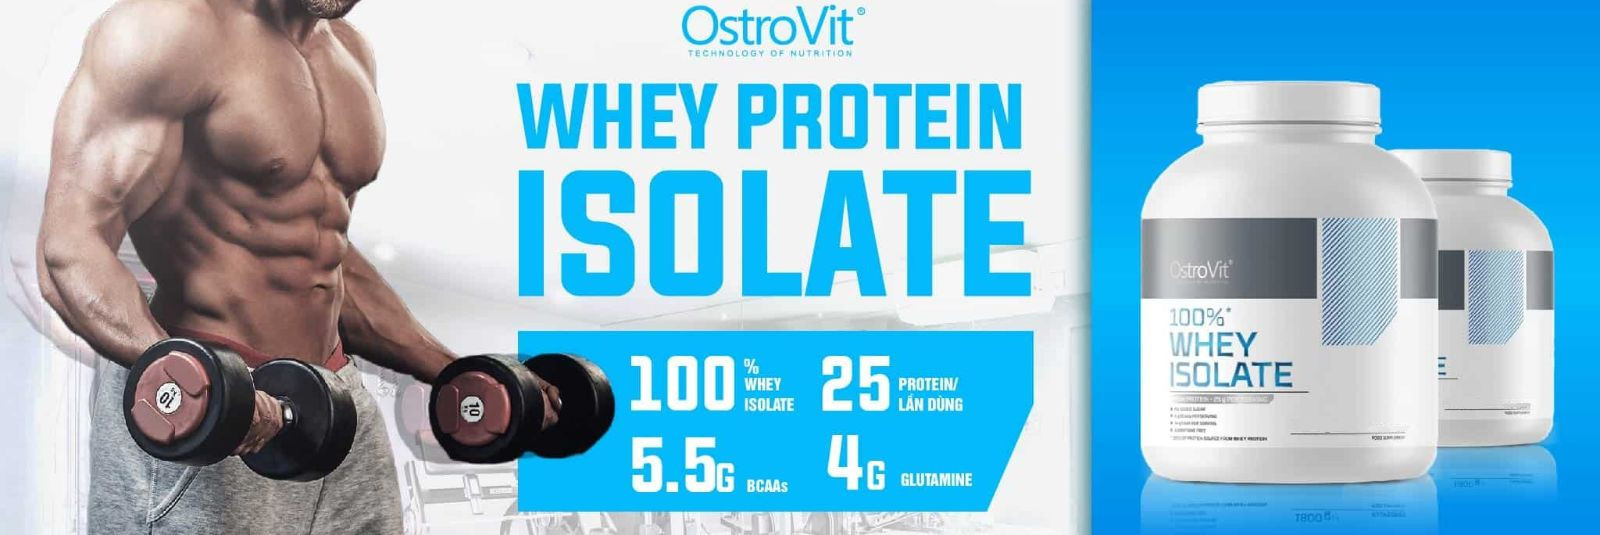 Kui oled aktiivne spordiharrastaja või unistad tervislikust elustiilist, on OstroVit Whey Protein Isolate just see toidulisand, mida oled otsinud. See on kõrgei